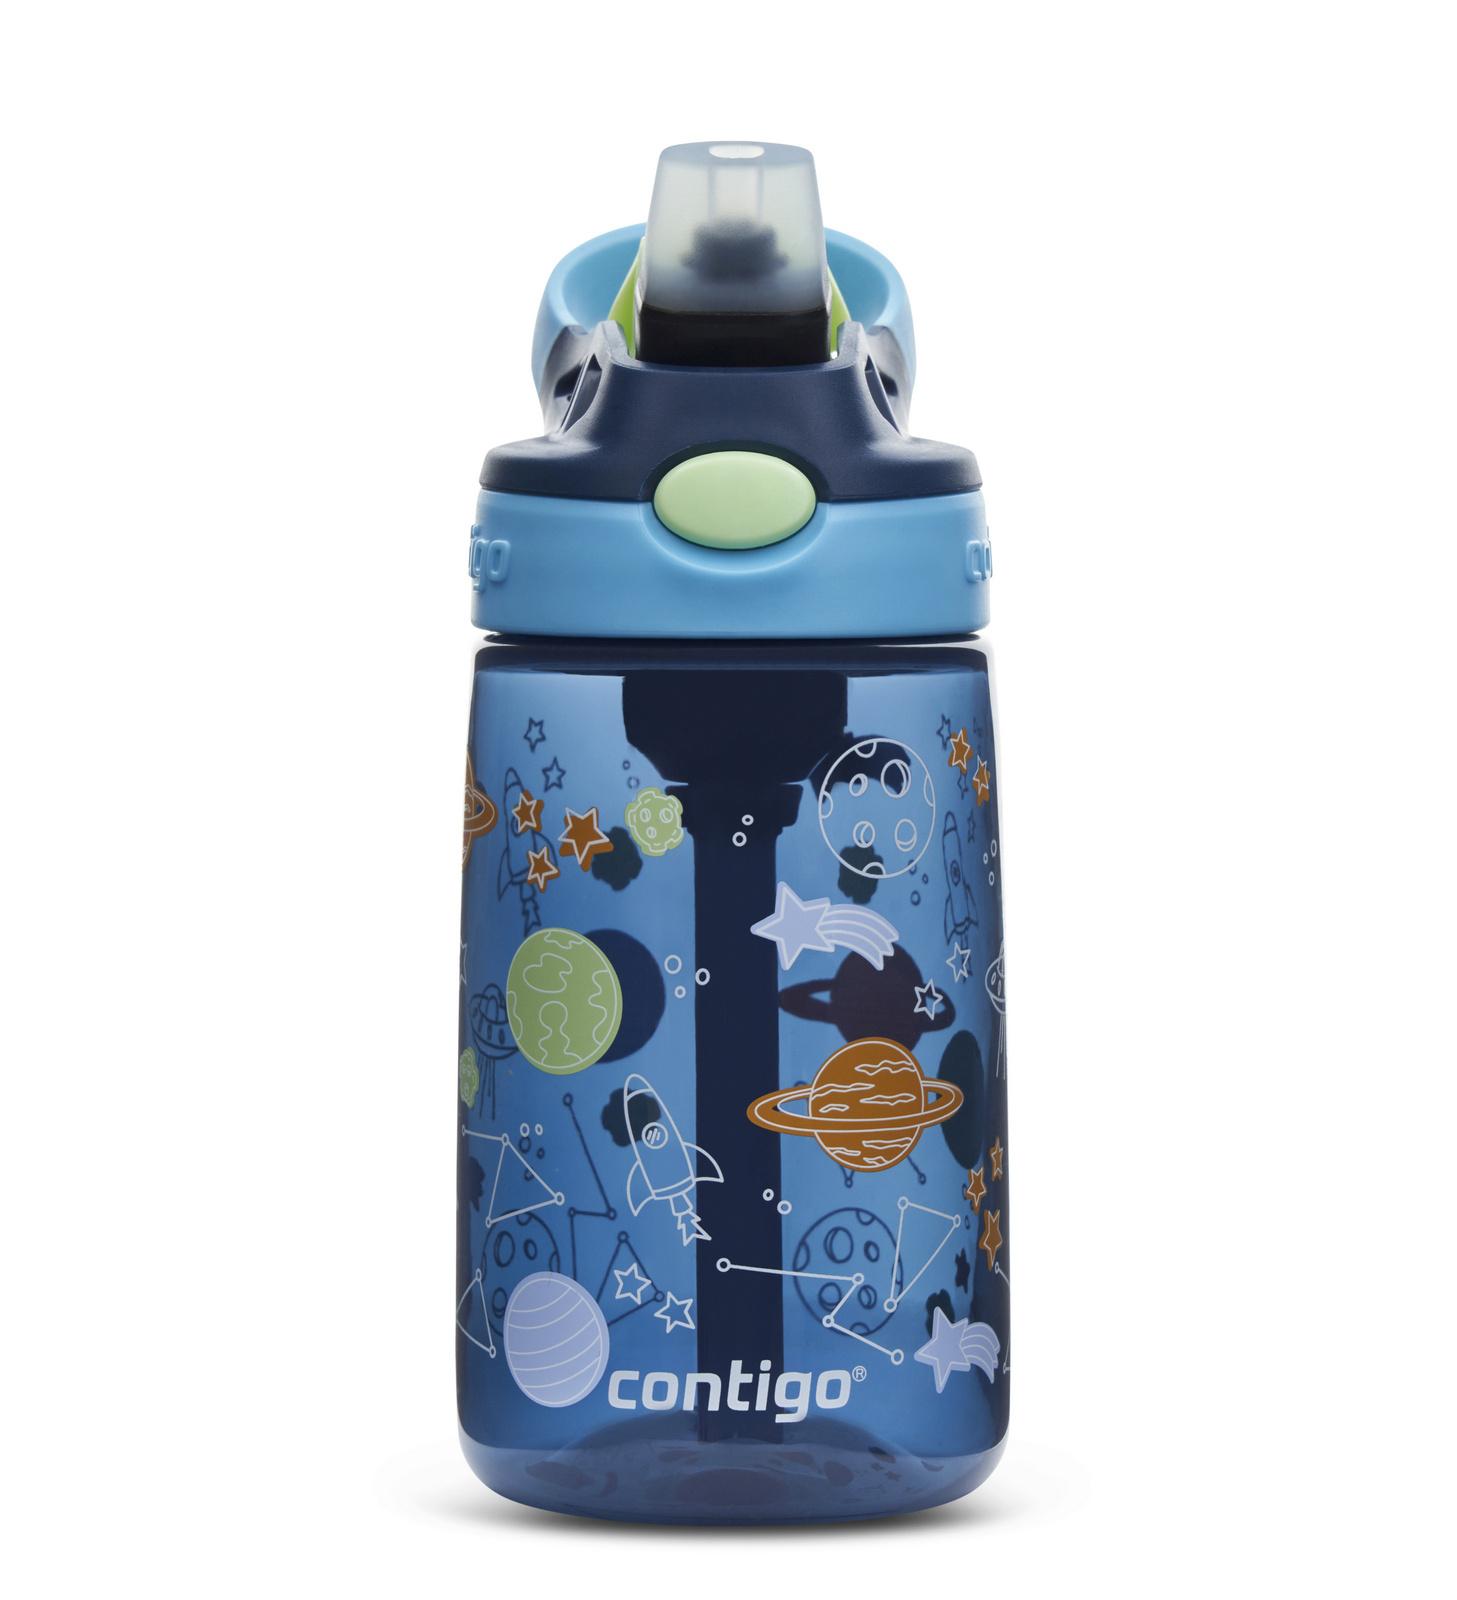 בקבוק ילדים עם קש בנפח 420 מ"ל קונטיגו - Contigo